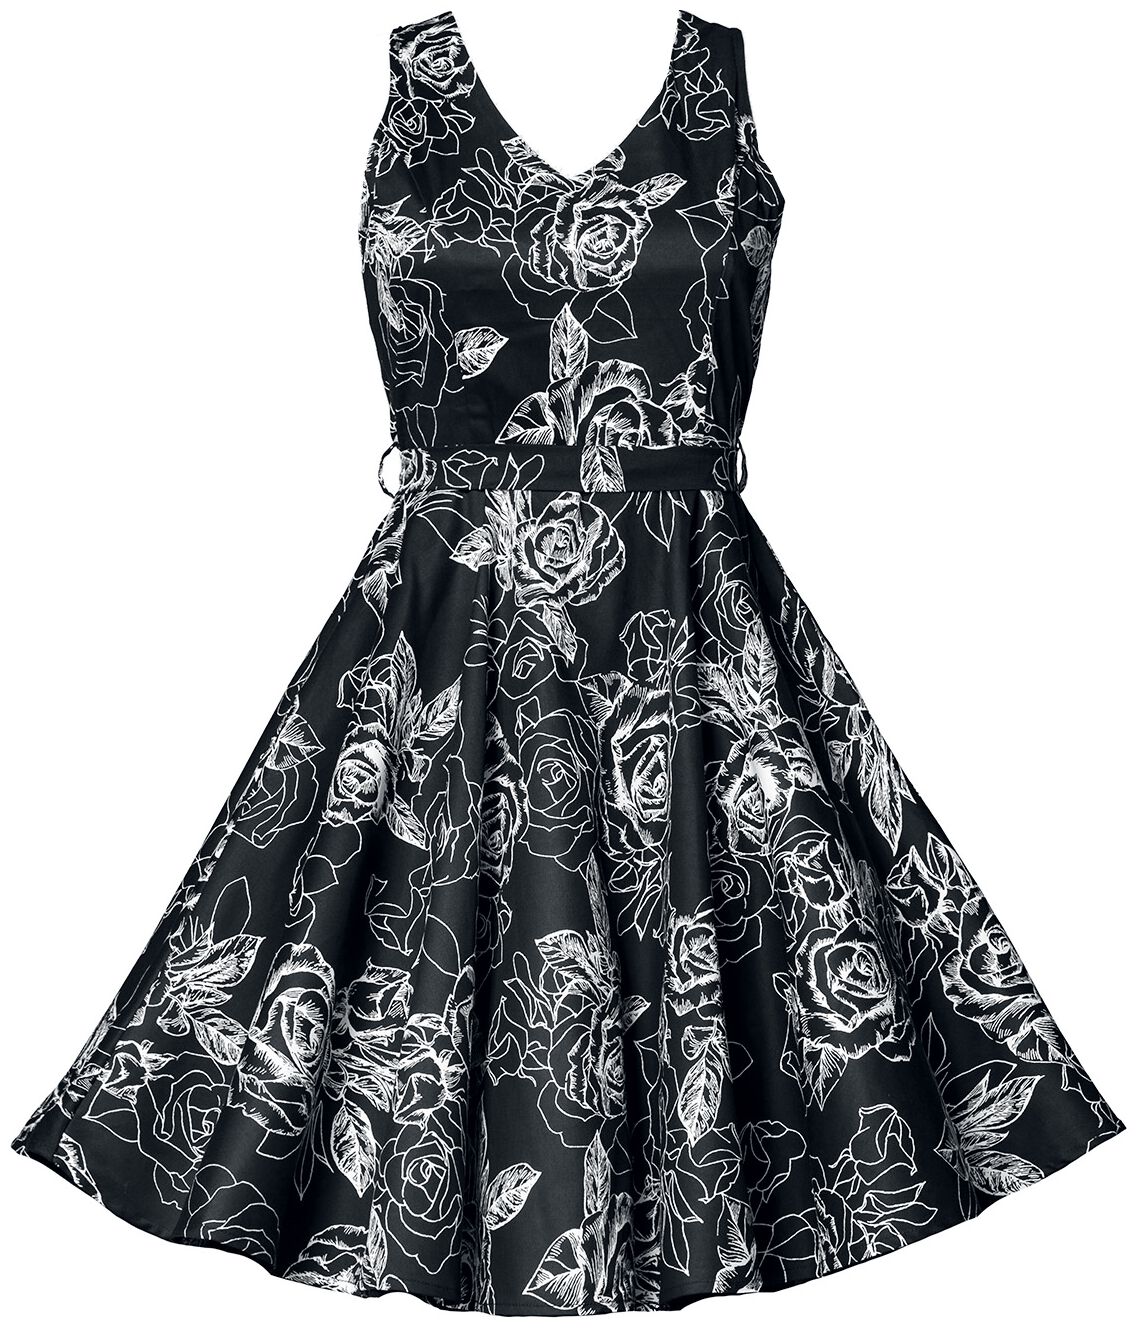 Belsira Swing-Blumenkleid Mittellanges Kleid schwarz weiß in XL